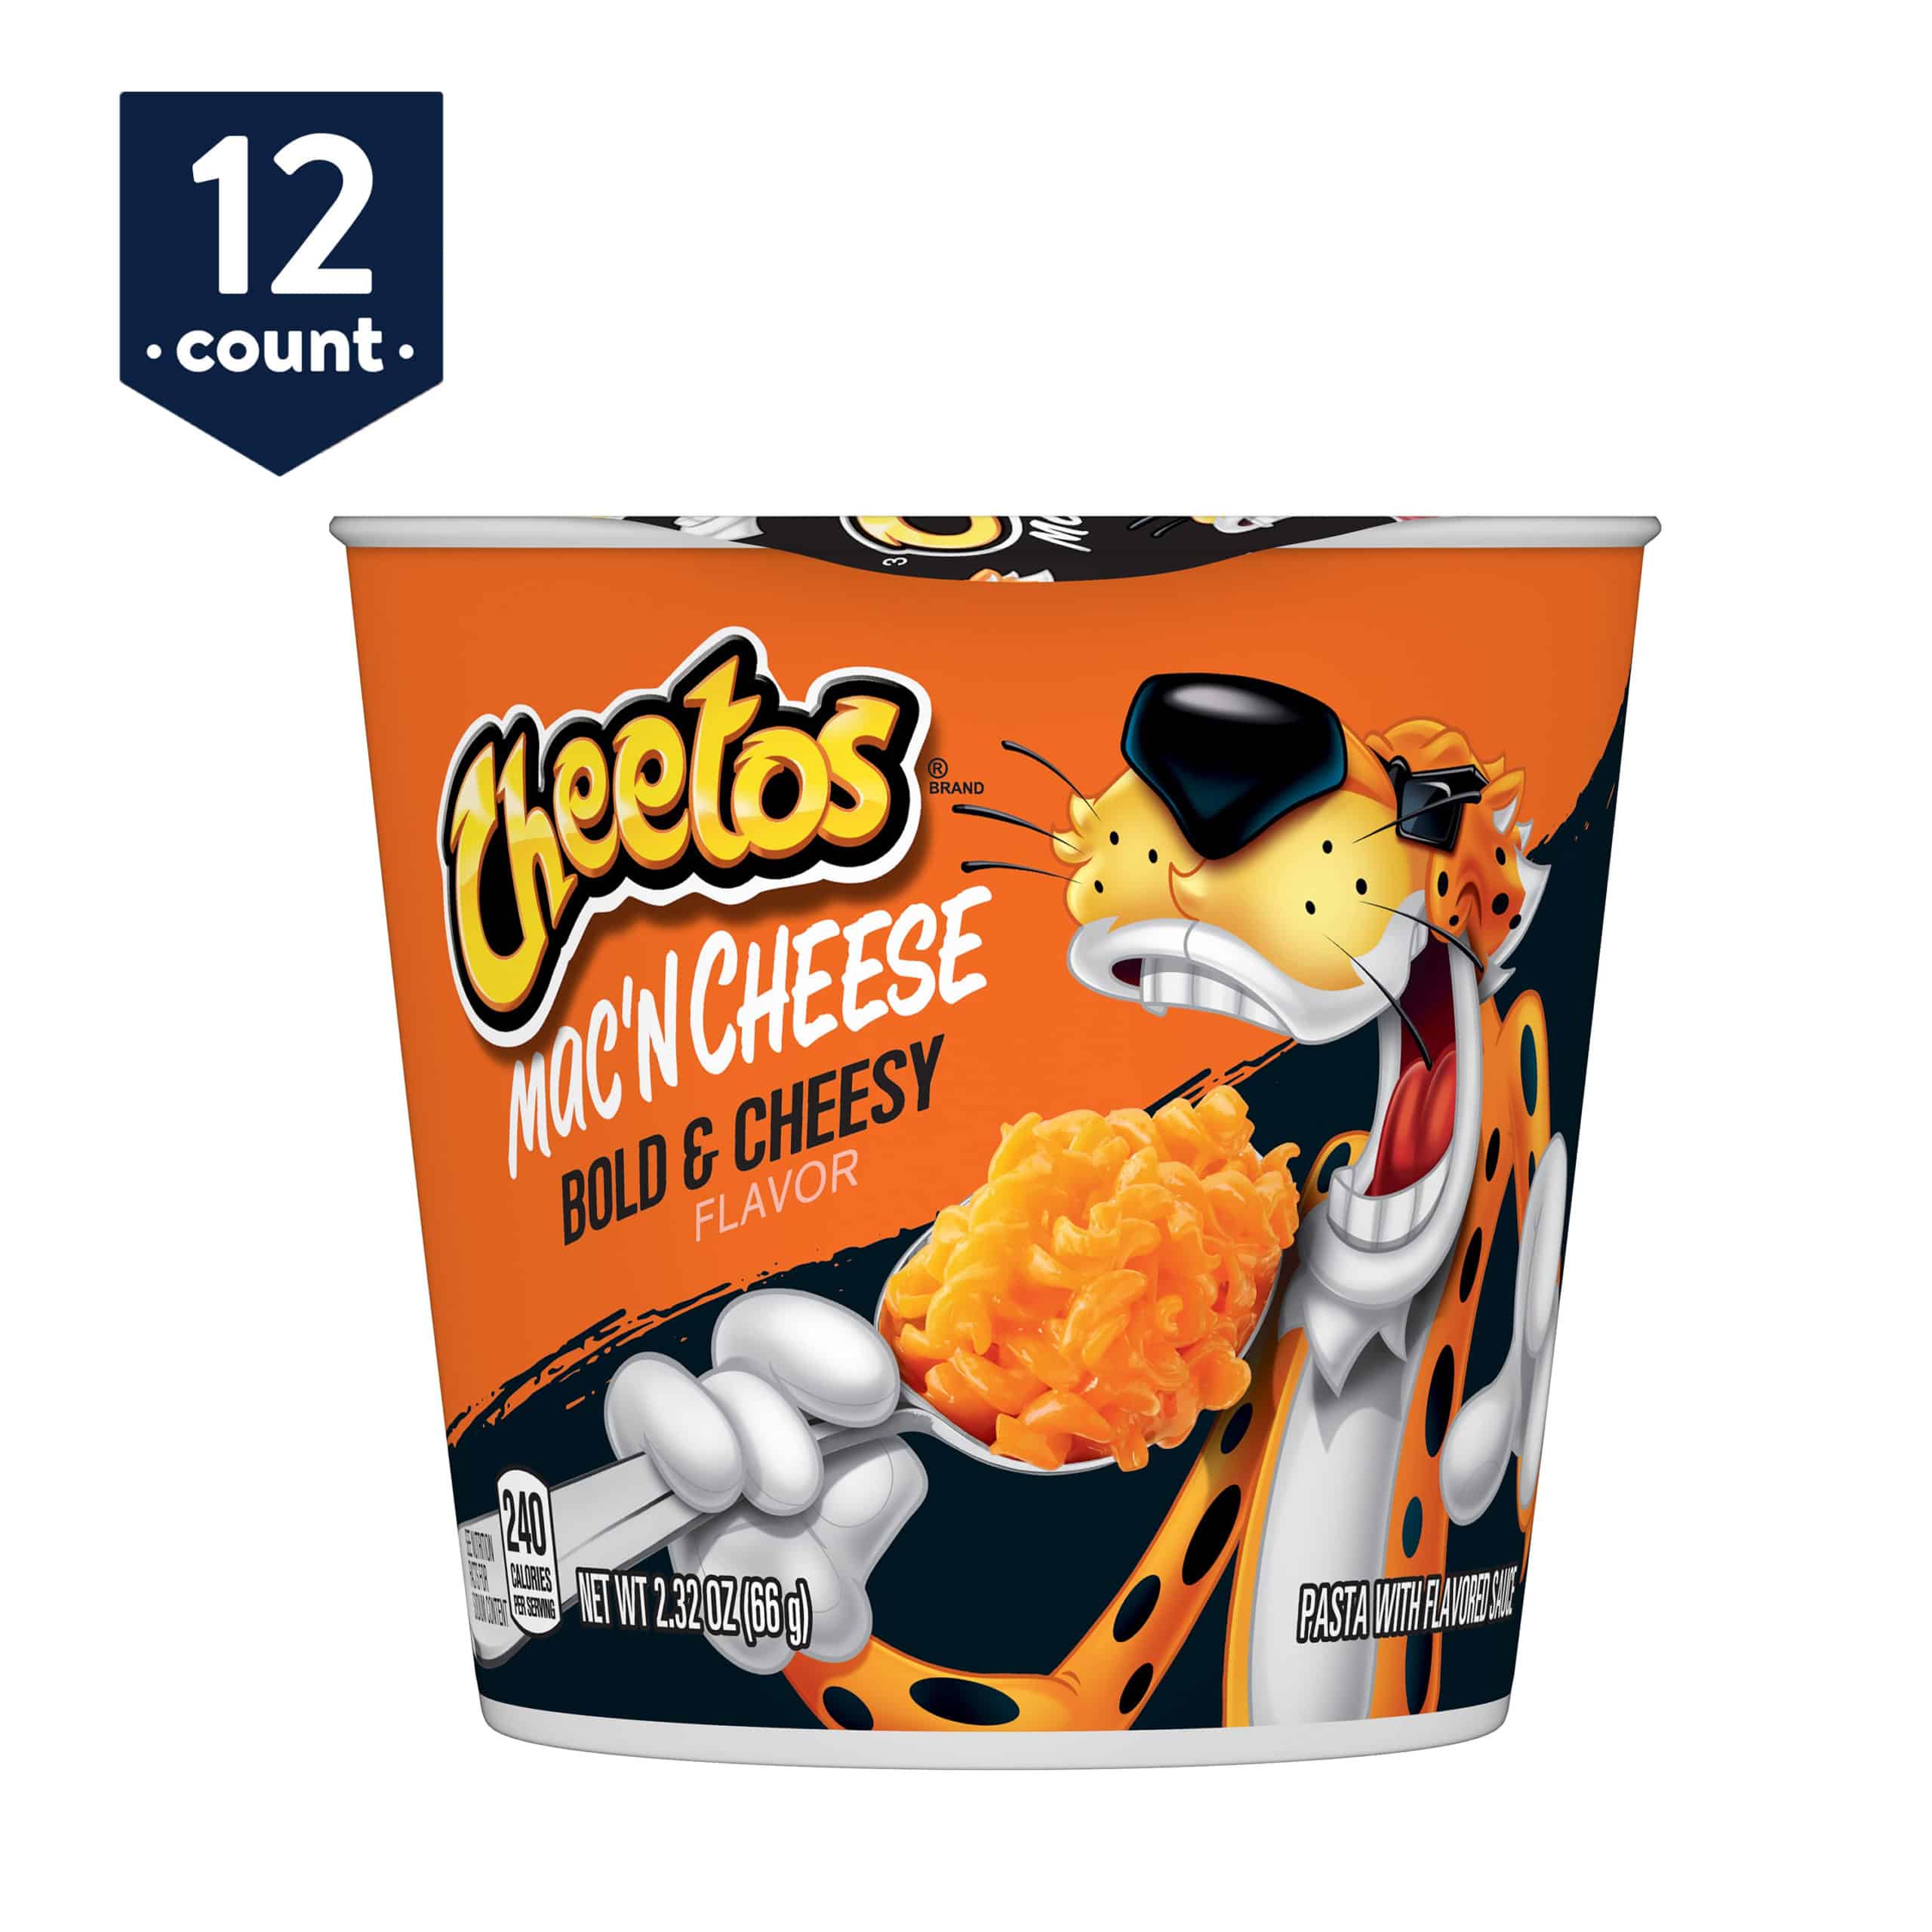 Cheetos Mac 'N Cheese, Bold & Cheesy Flavor, 2.32 oz Cups, 12 Ct